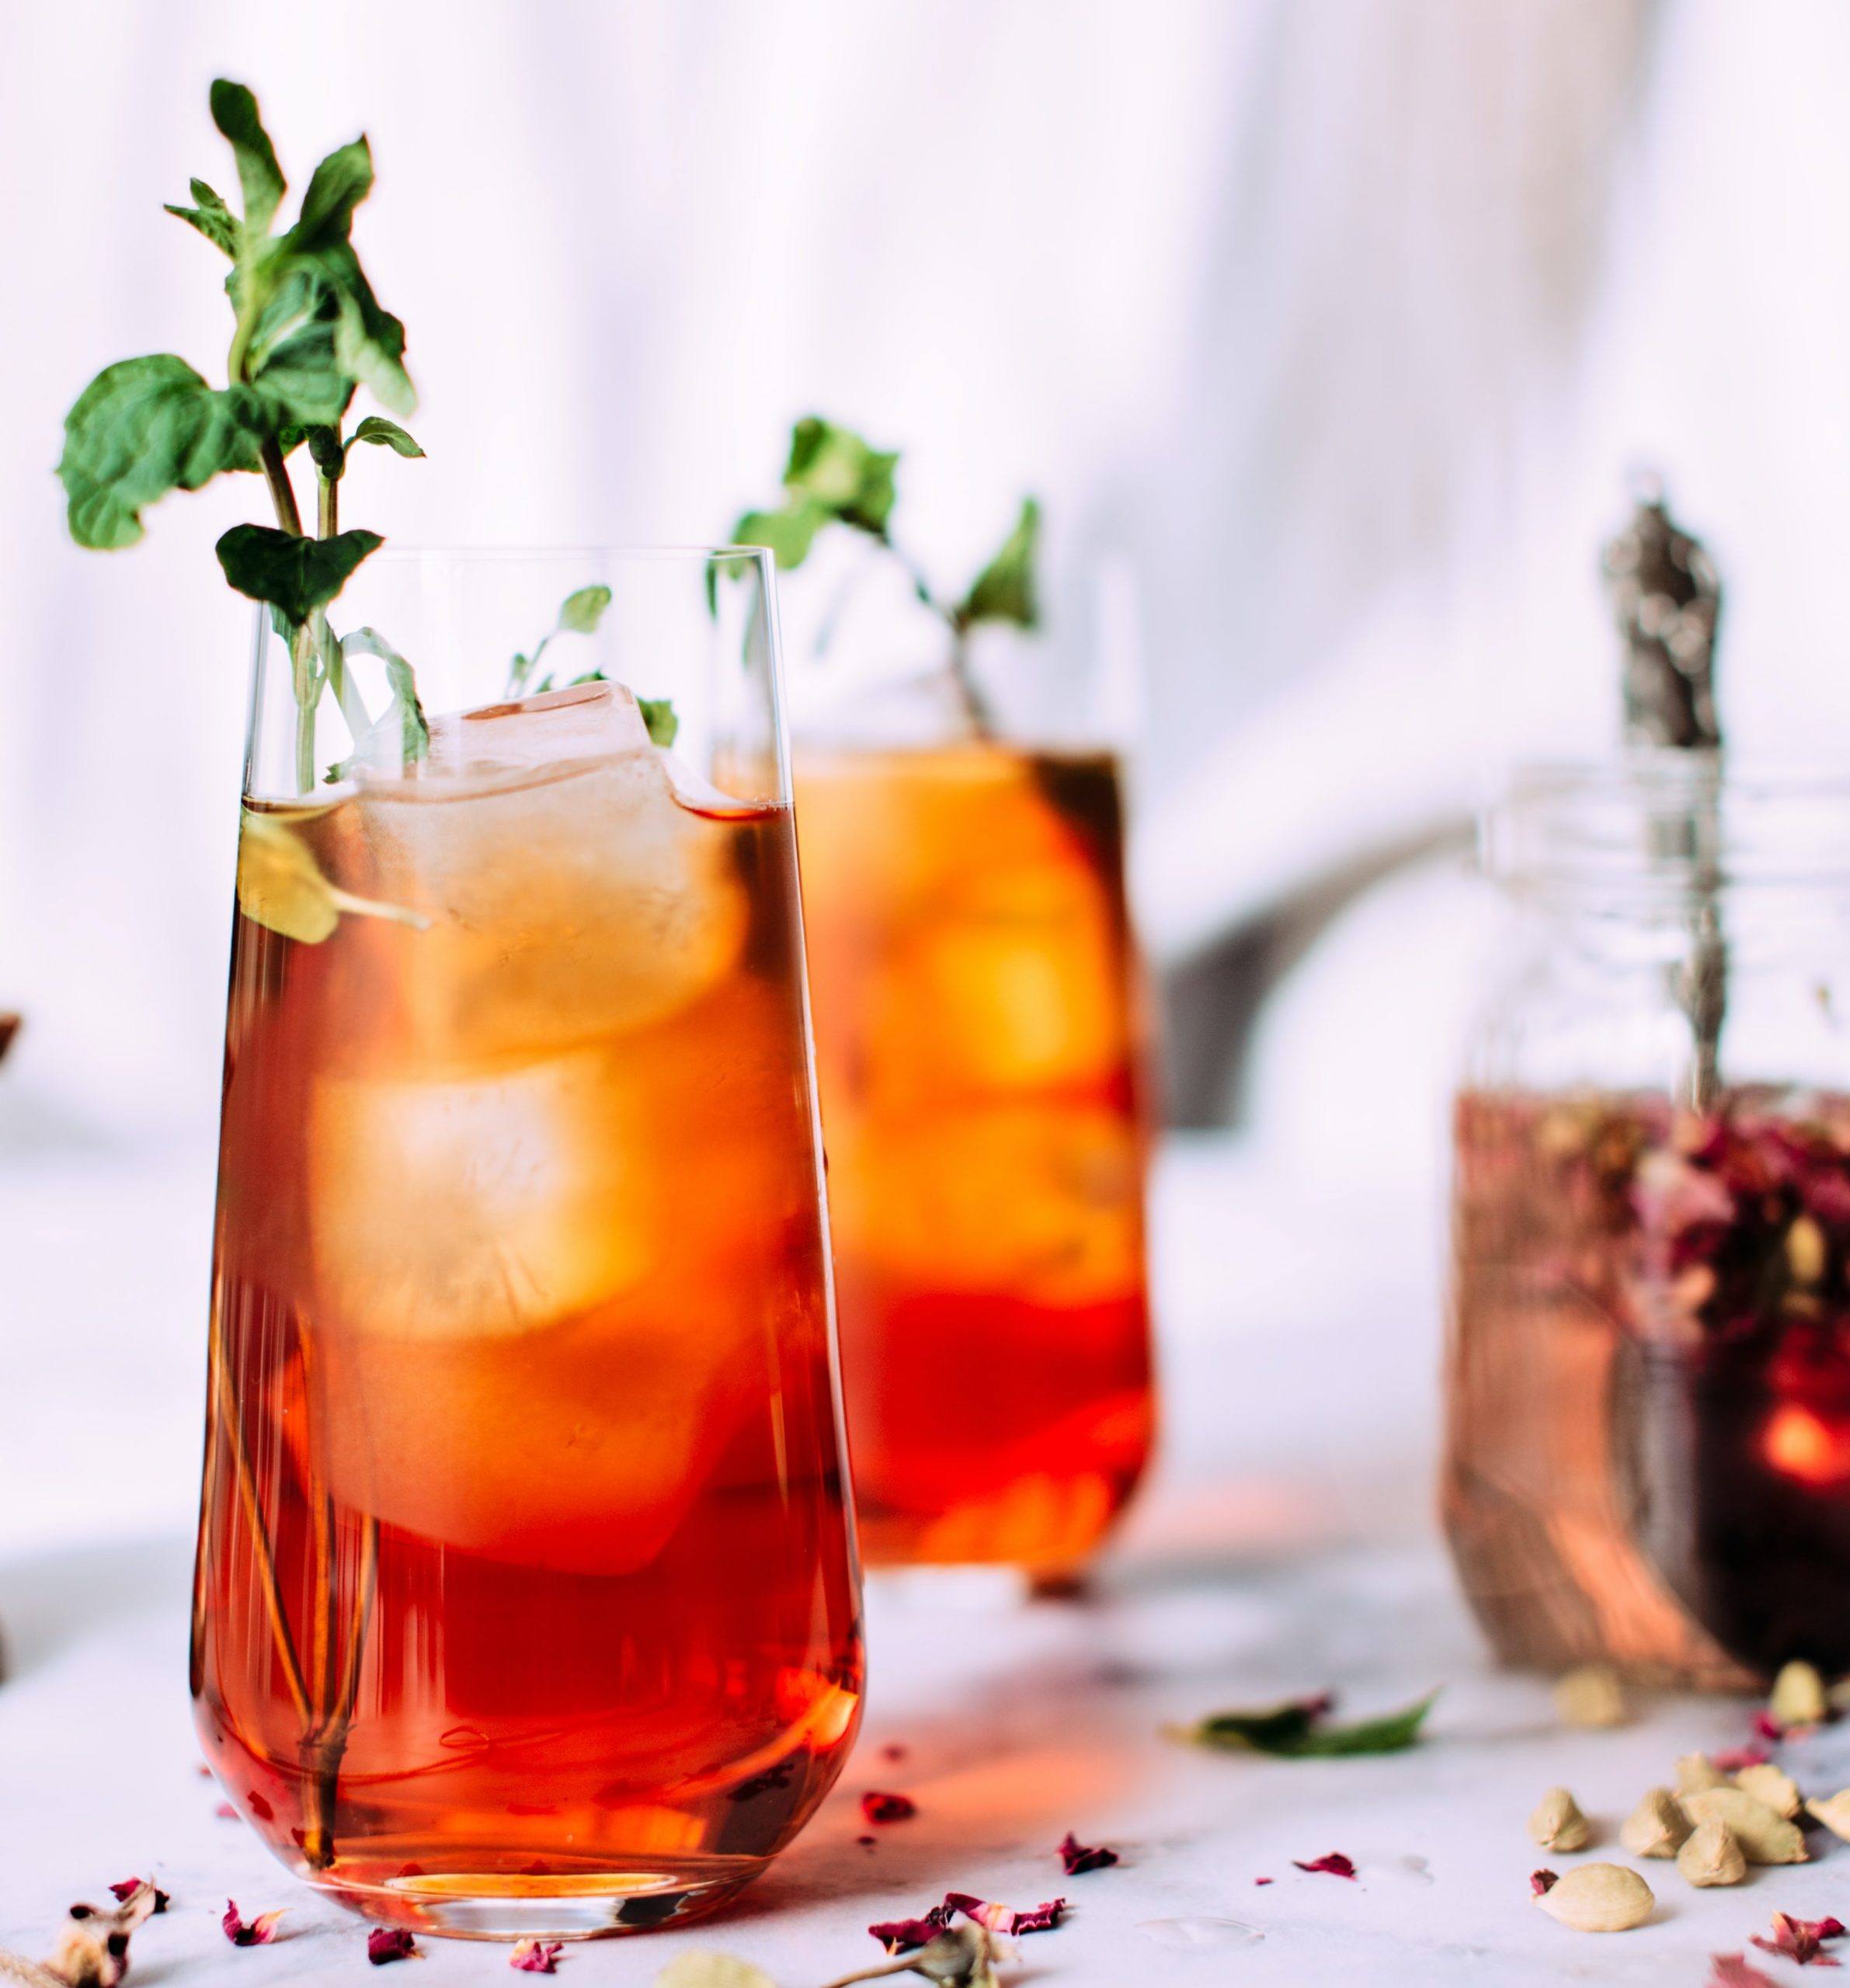 How To Make Iced Tea The Tea House Loose Leaf Tea Specialists